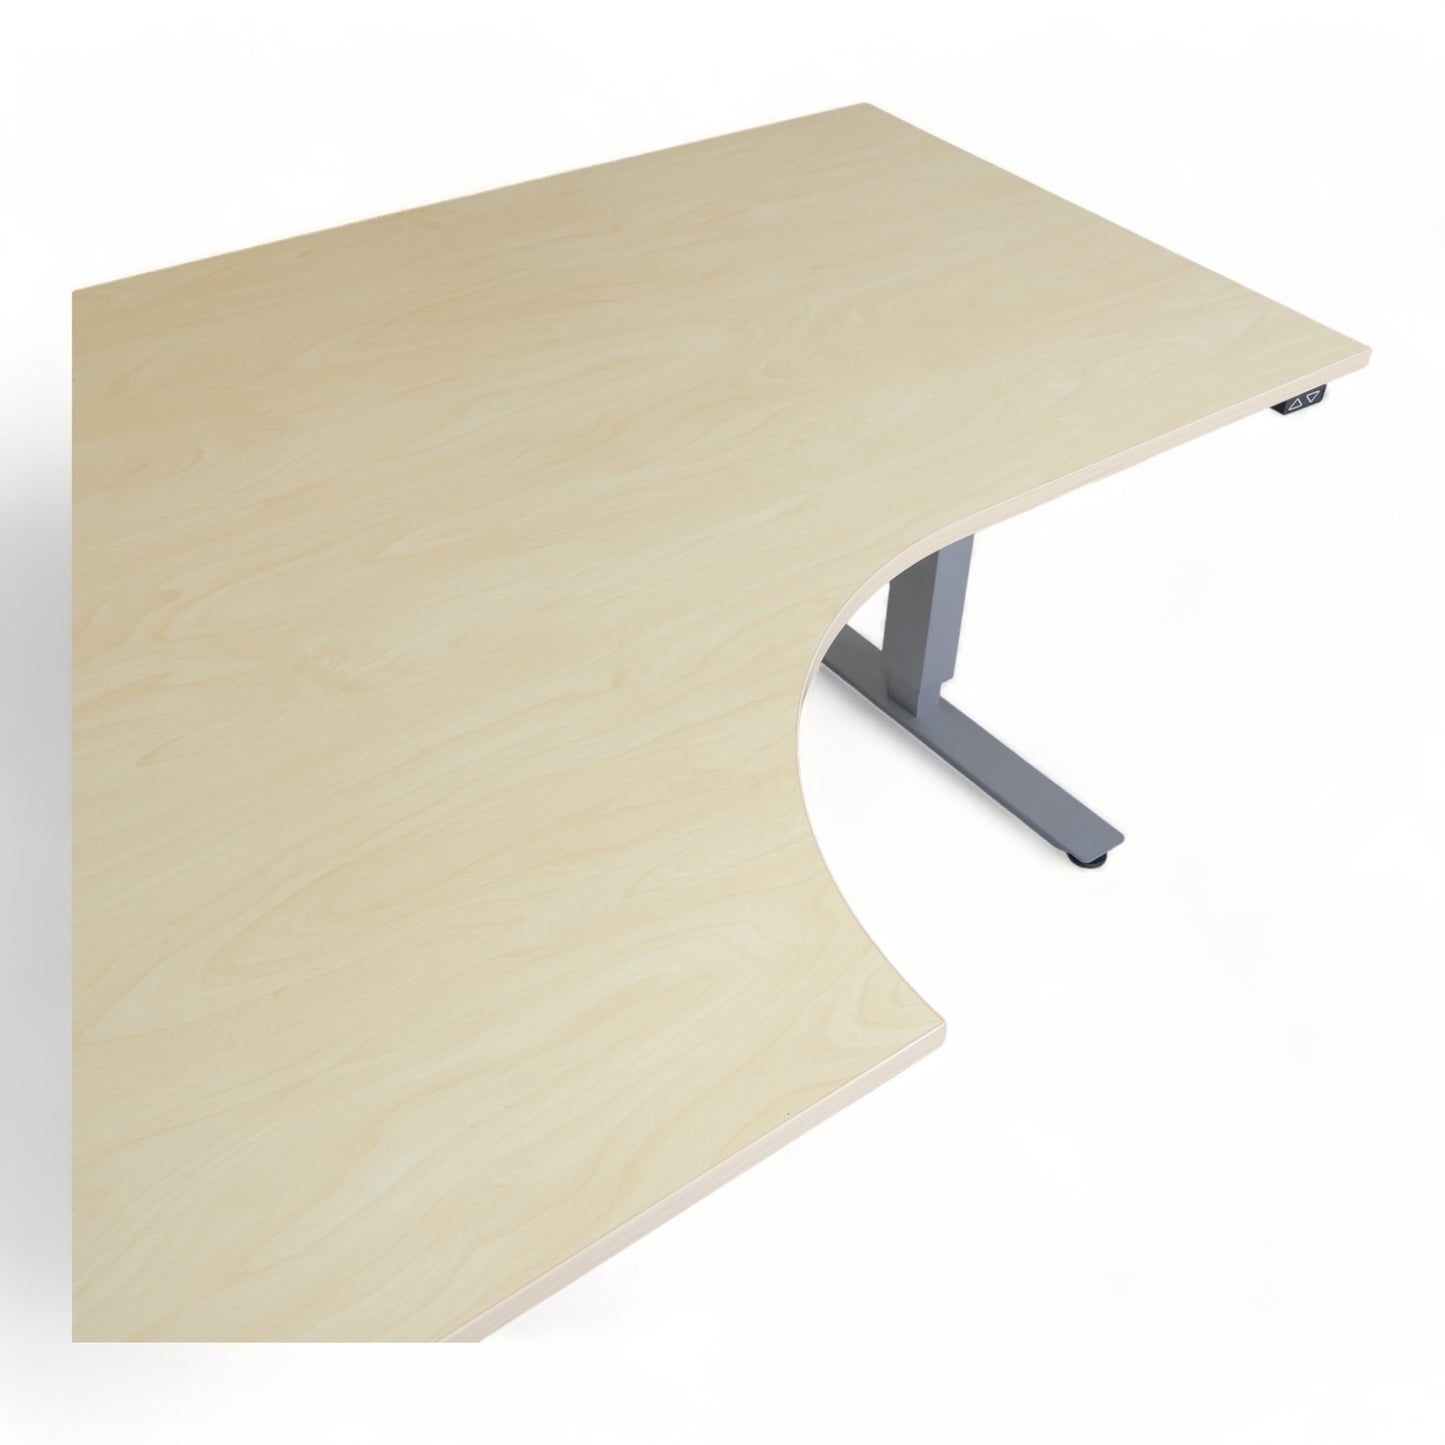 Kvalitetsikret | 160x120, elektrisk hev/senk bord med sving